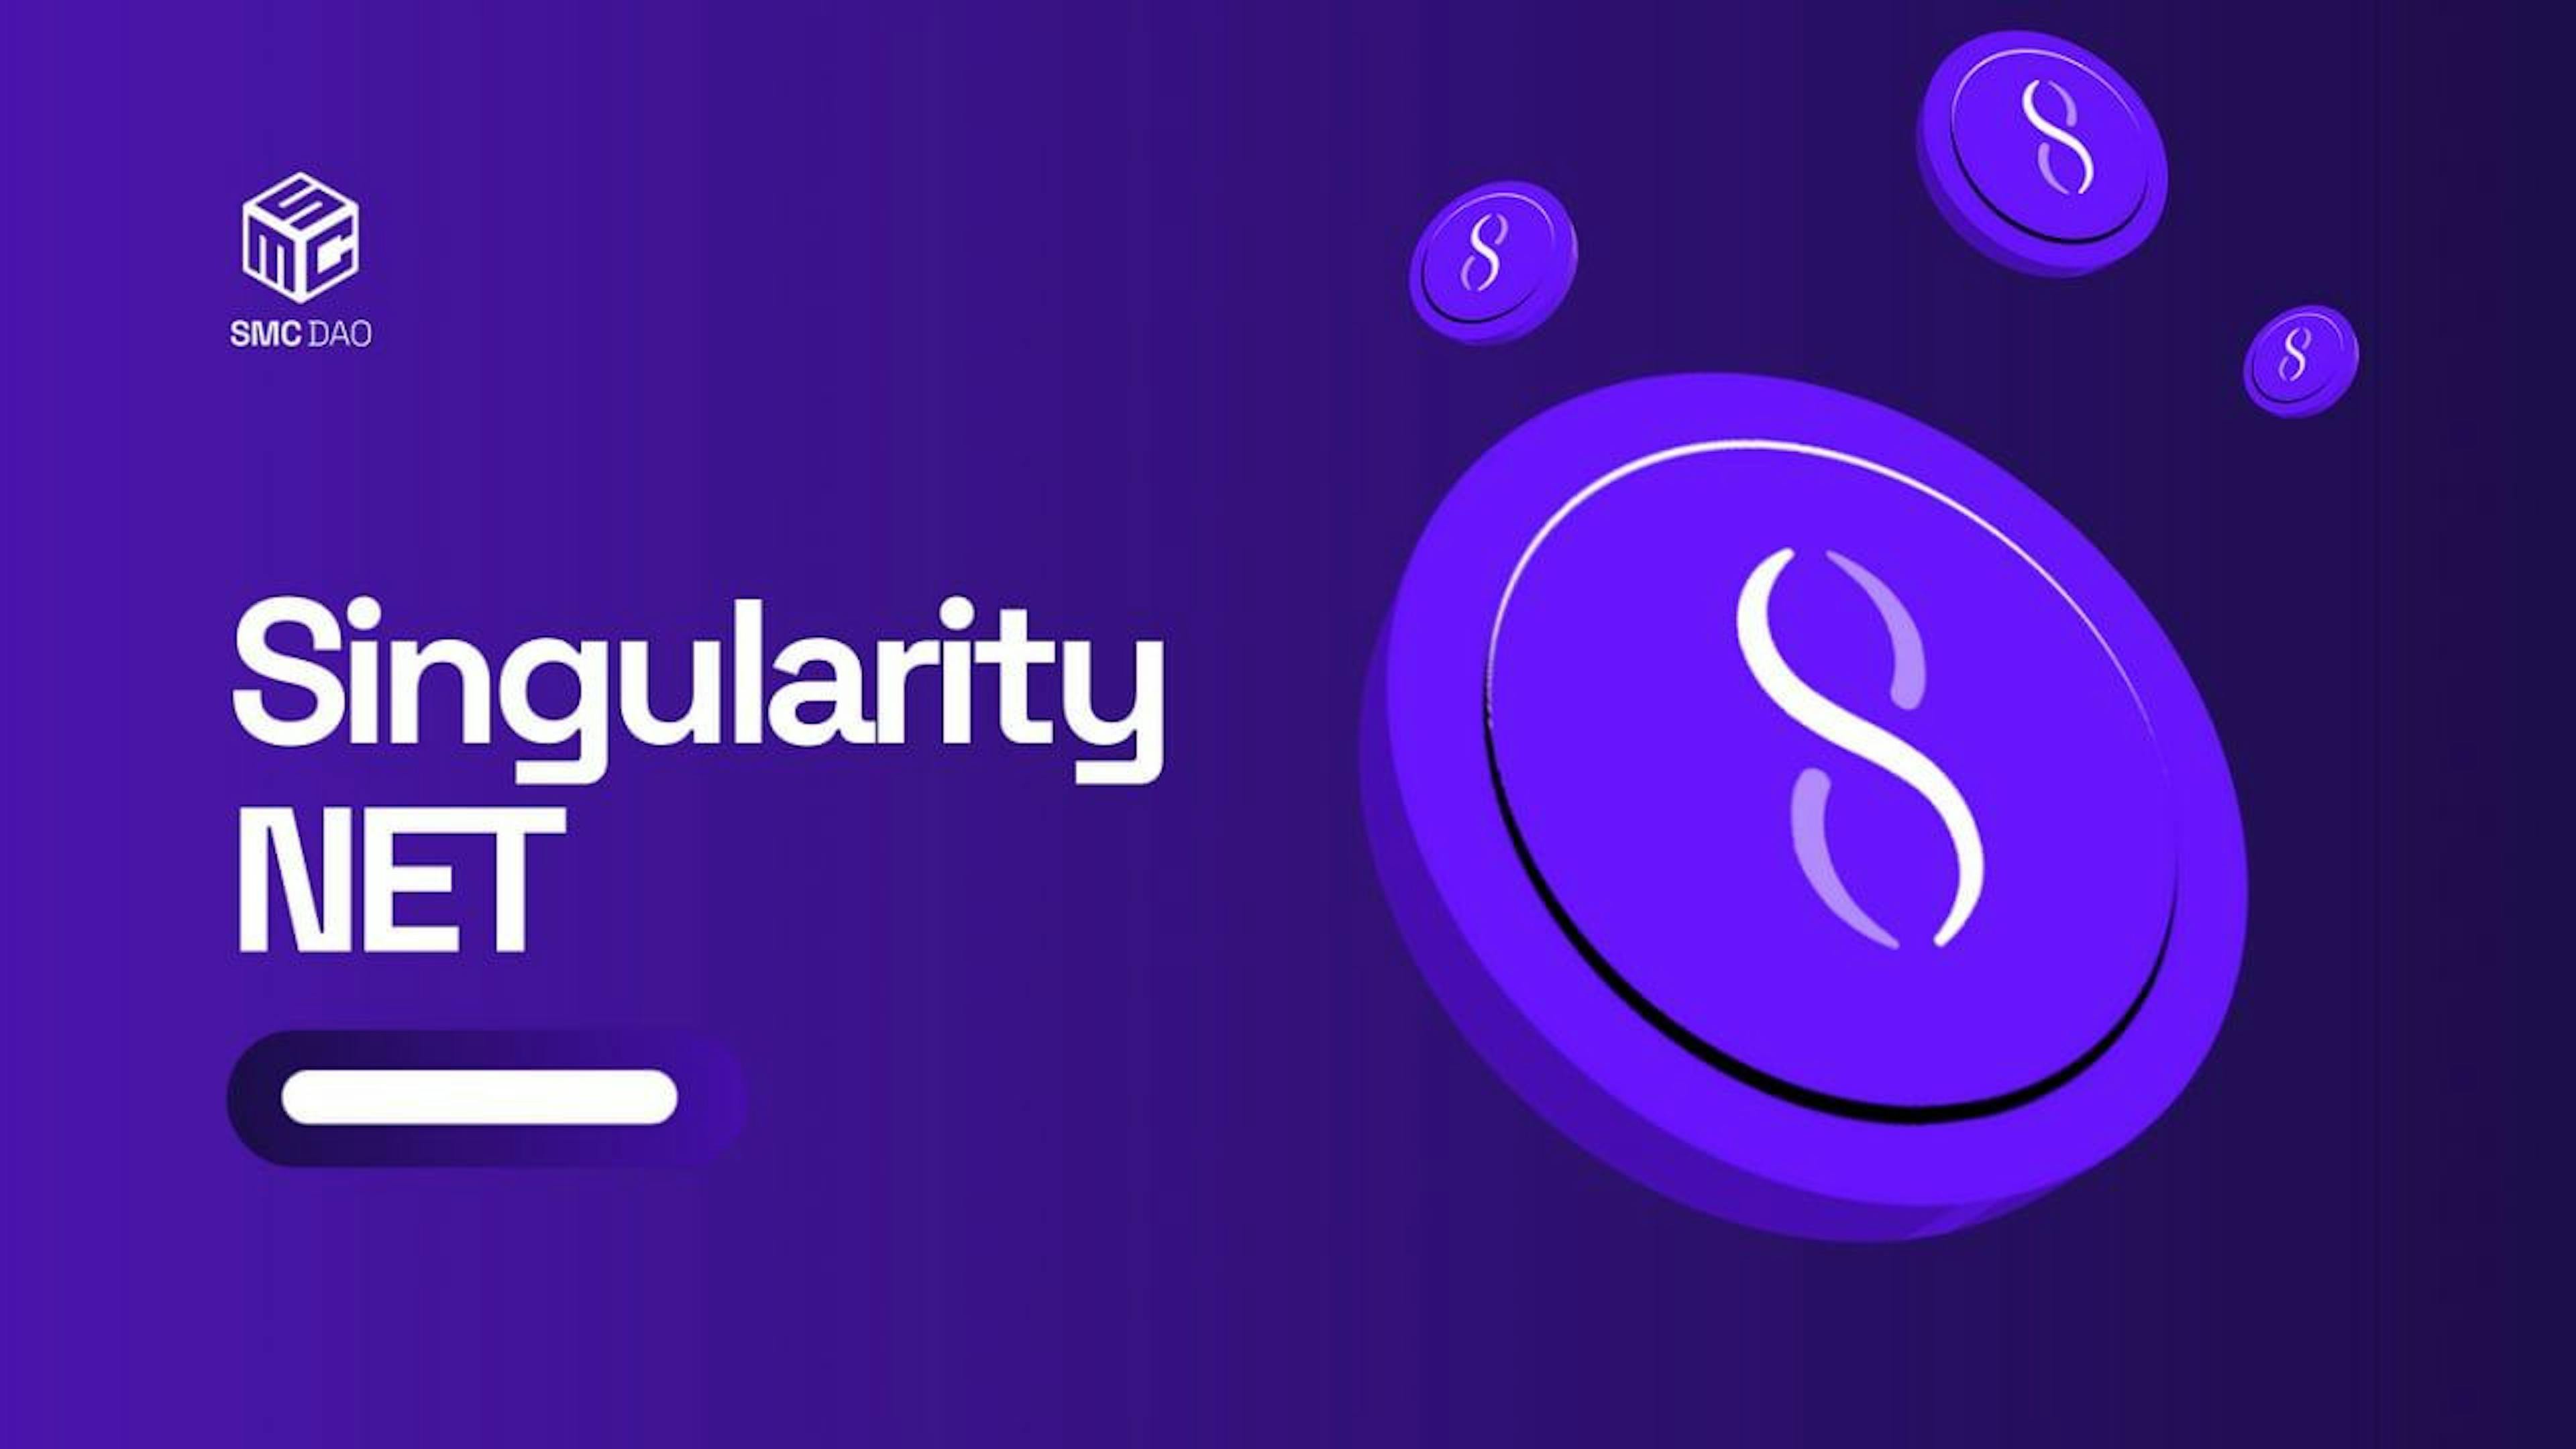 featured image - Các nhà đầu tư của SingularityNet (AGIX) tham gia vào chương trình tặng quà trị giá 888 nghìn đô la của AI Giant Option2Trade (O2T)